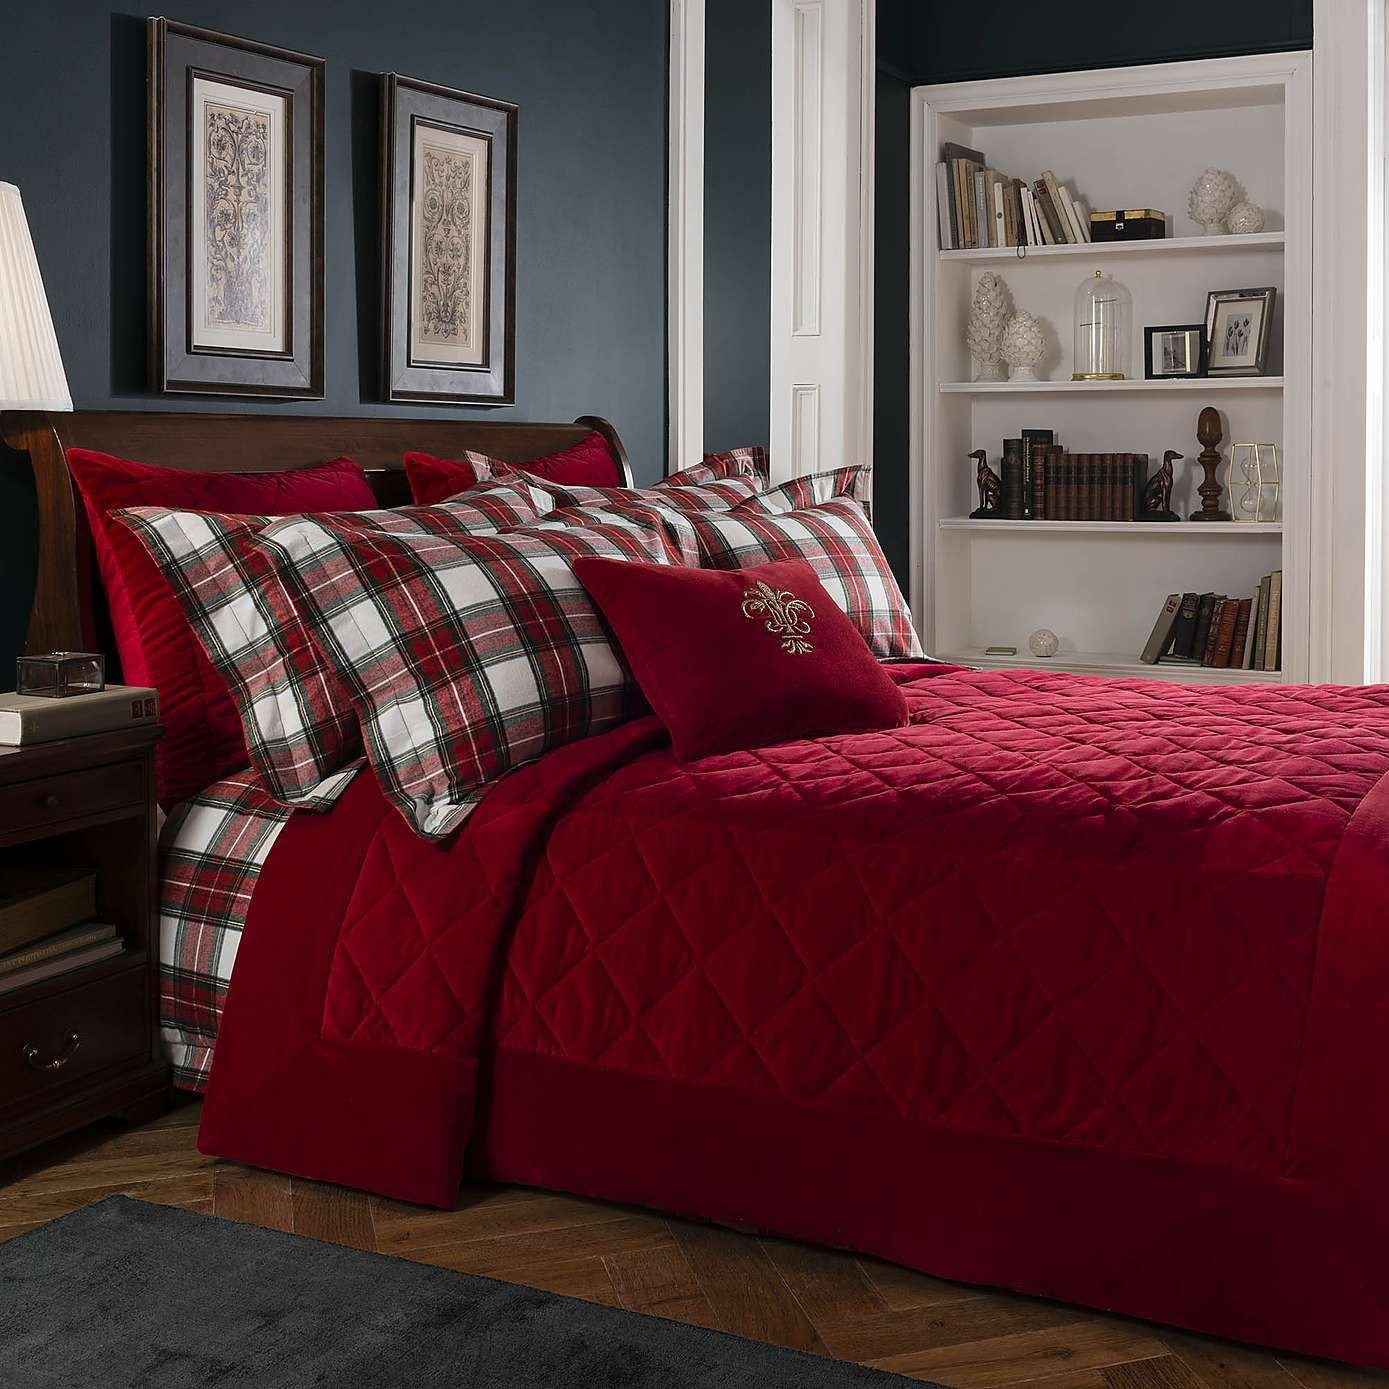 Red Grey and Black Bedroom Inspirational Dorma isla Red Bedspread Dunelm